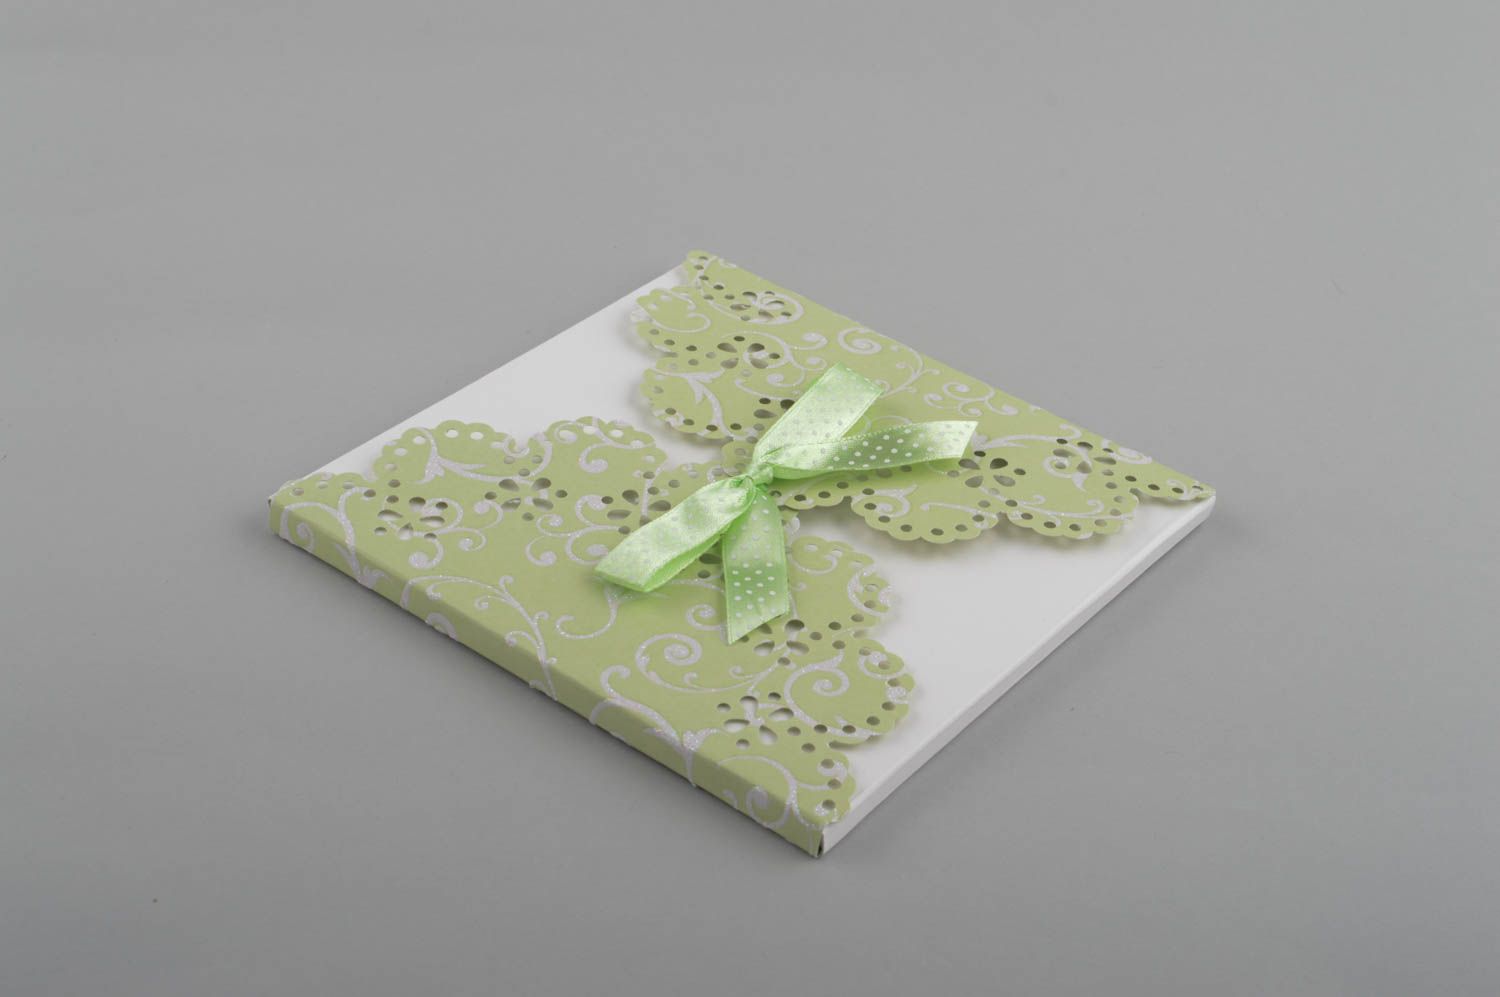 Handmade envelope gift envelope CD holder handmade gifts home decor gift wrap photo 3